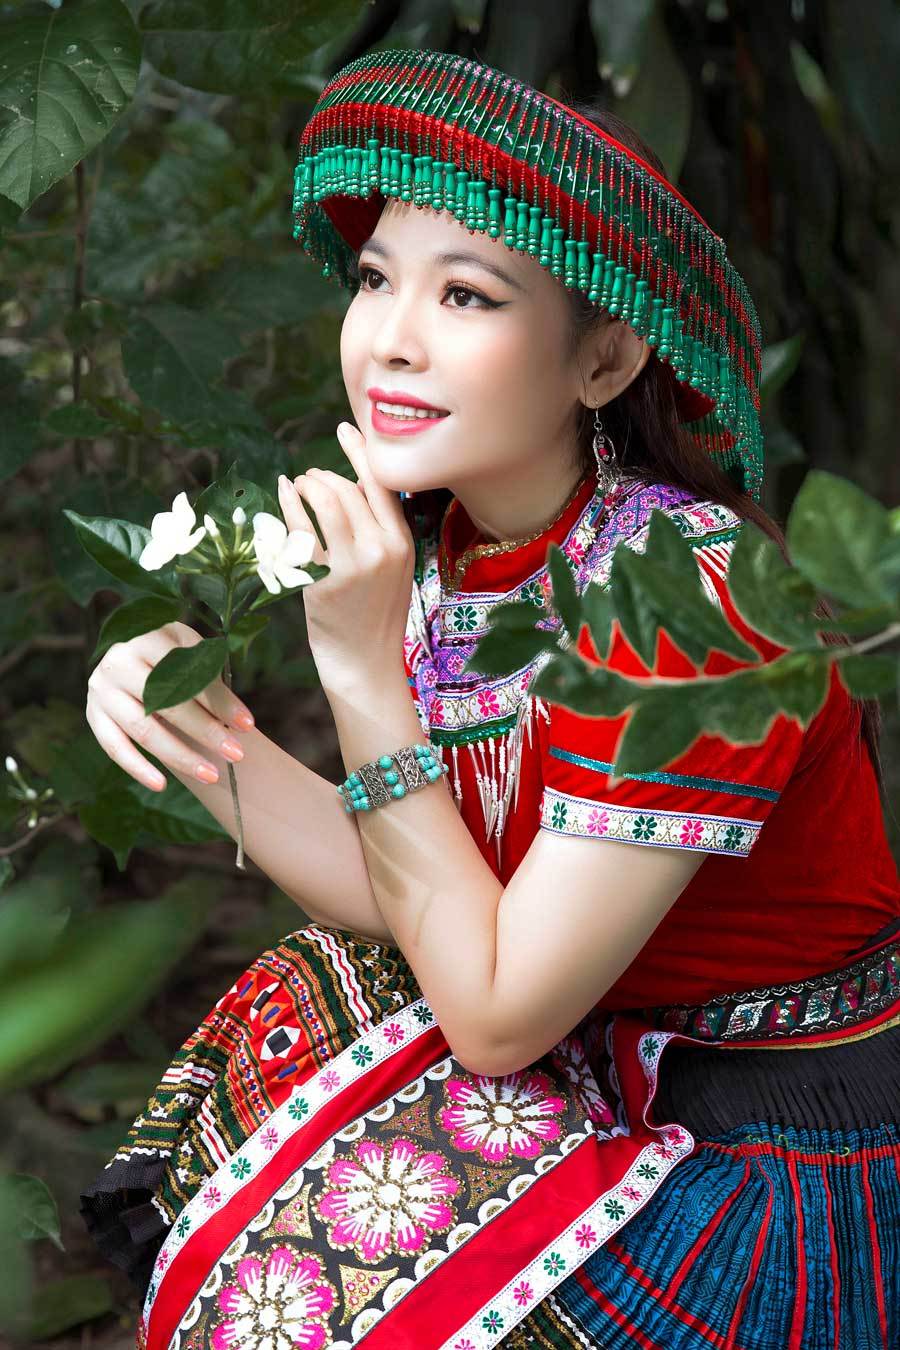 Kim Thanh Thảo truyền thông điệp bảo tồn văn hoá thổ cẩm dân tộc